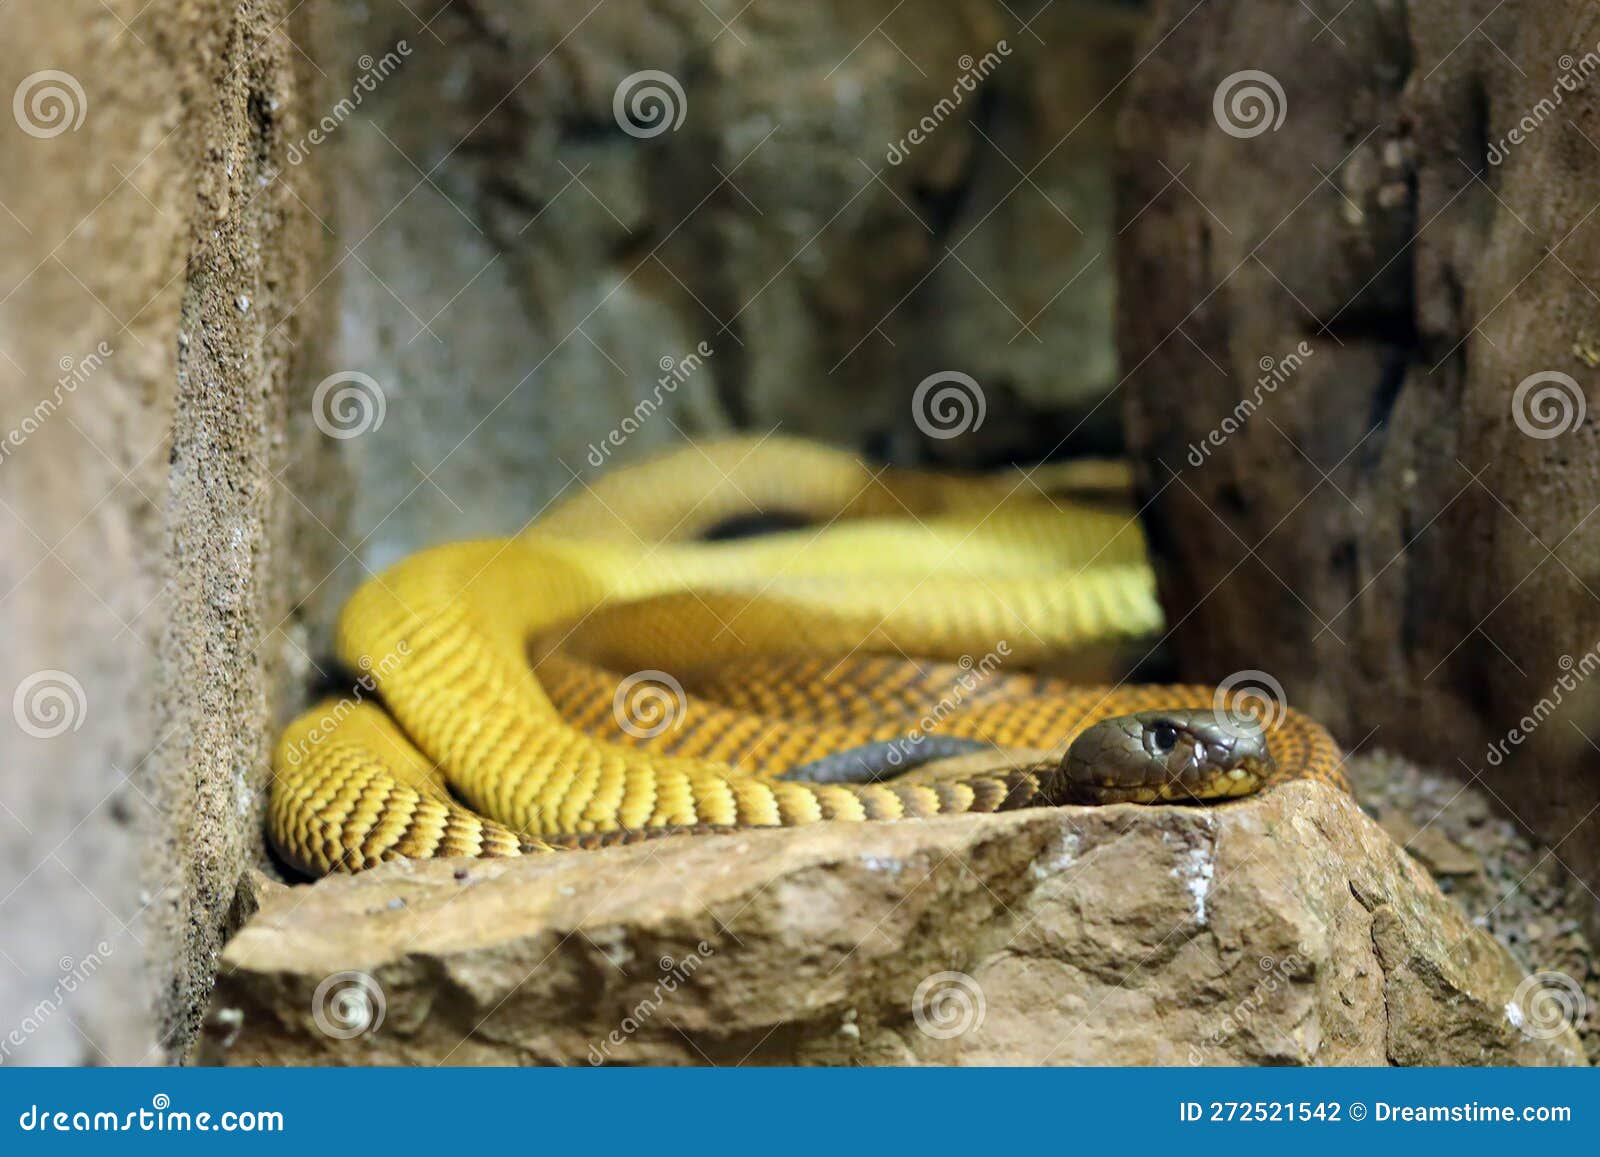 the arabian cobra (naja arabica) lying on a stone.